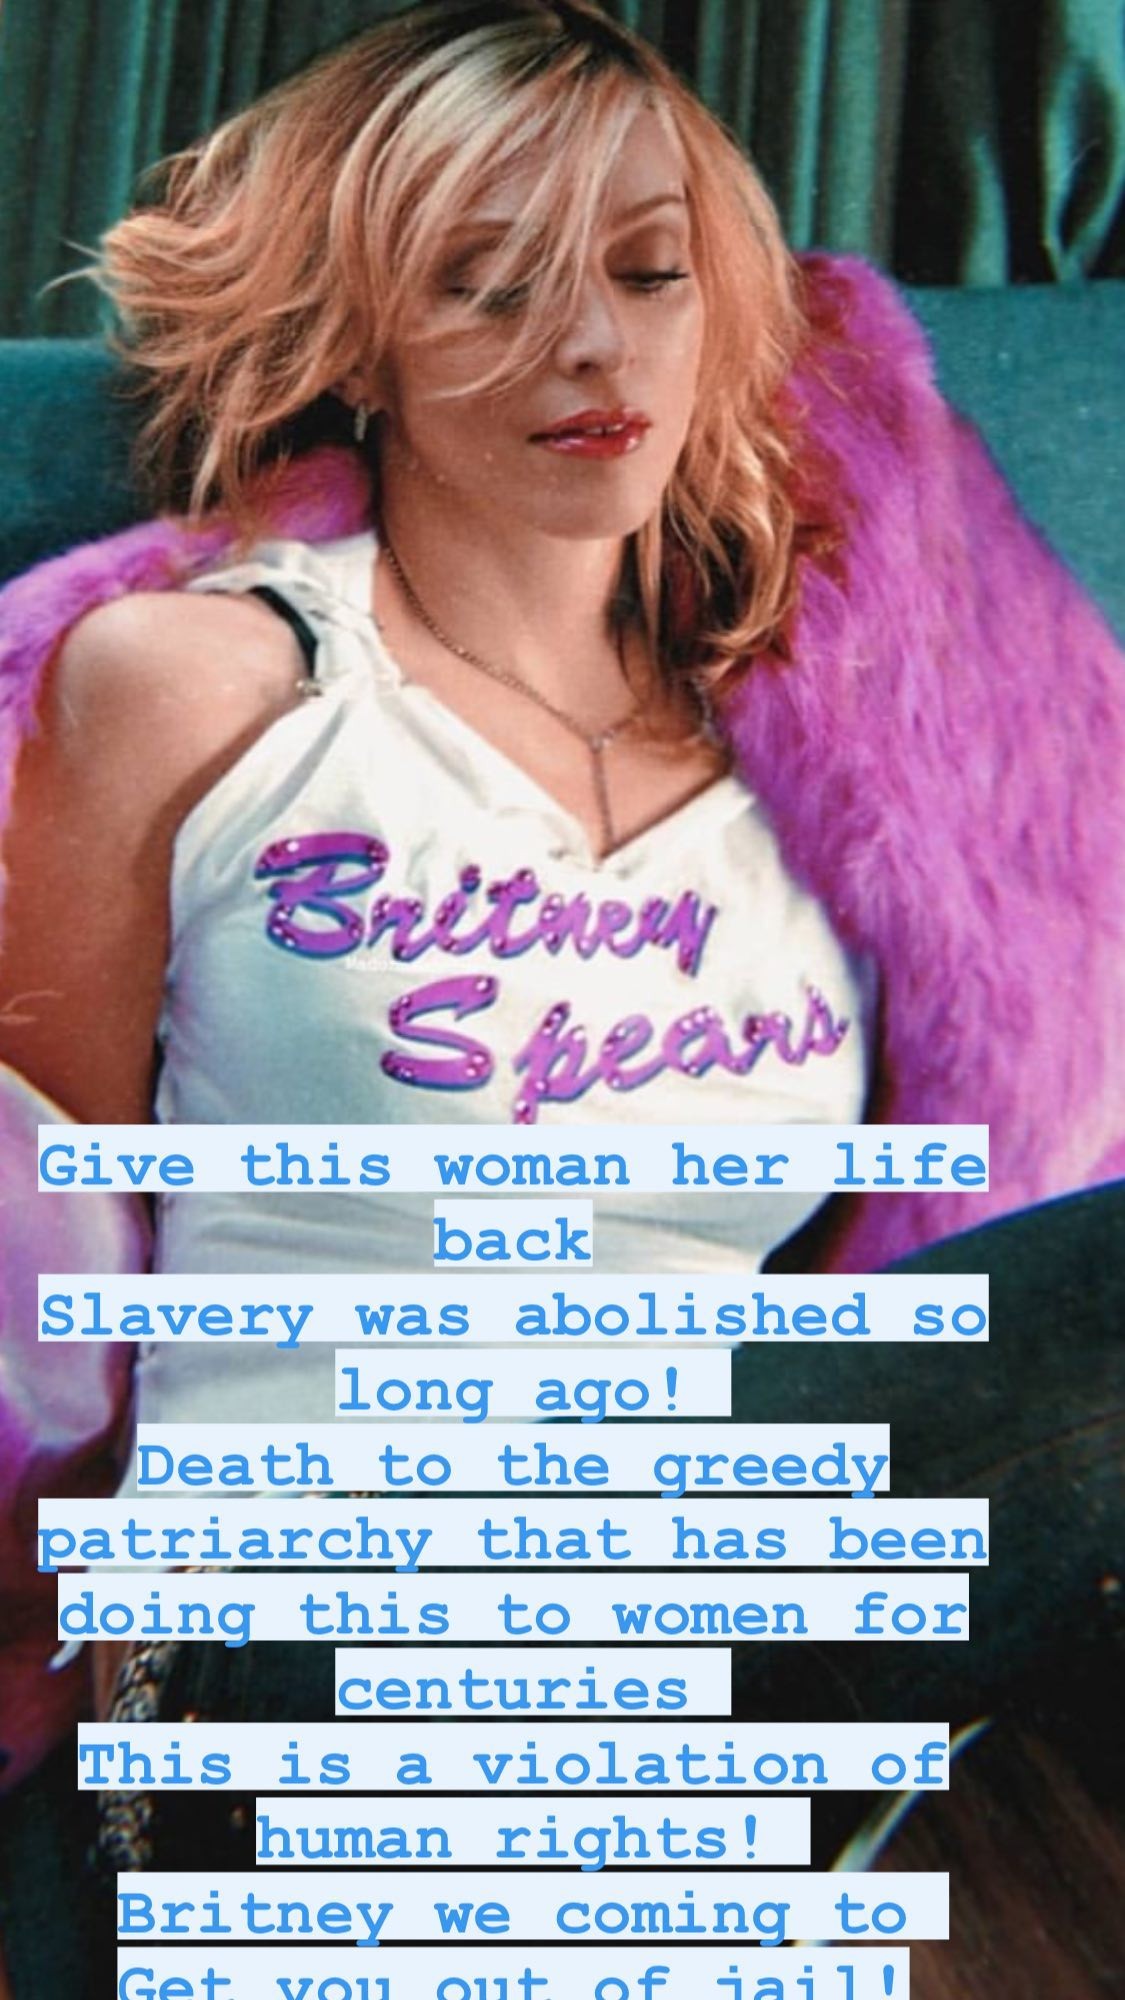 Madonna manda mensagem de apoio para Britney Spears (Foto: Reprodução/Instagram)